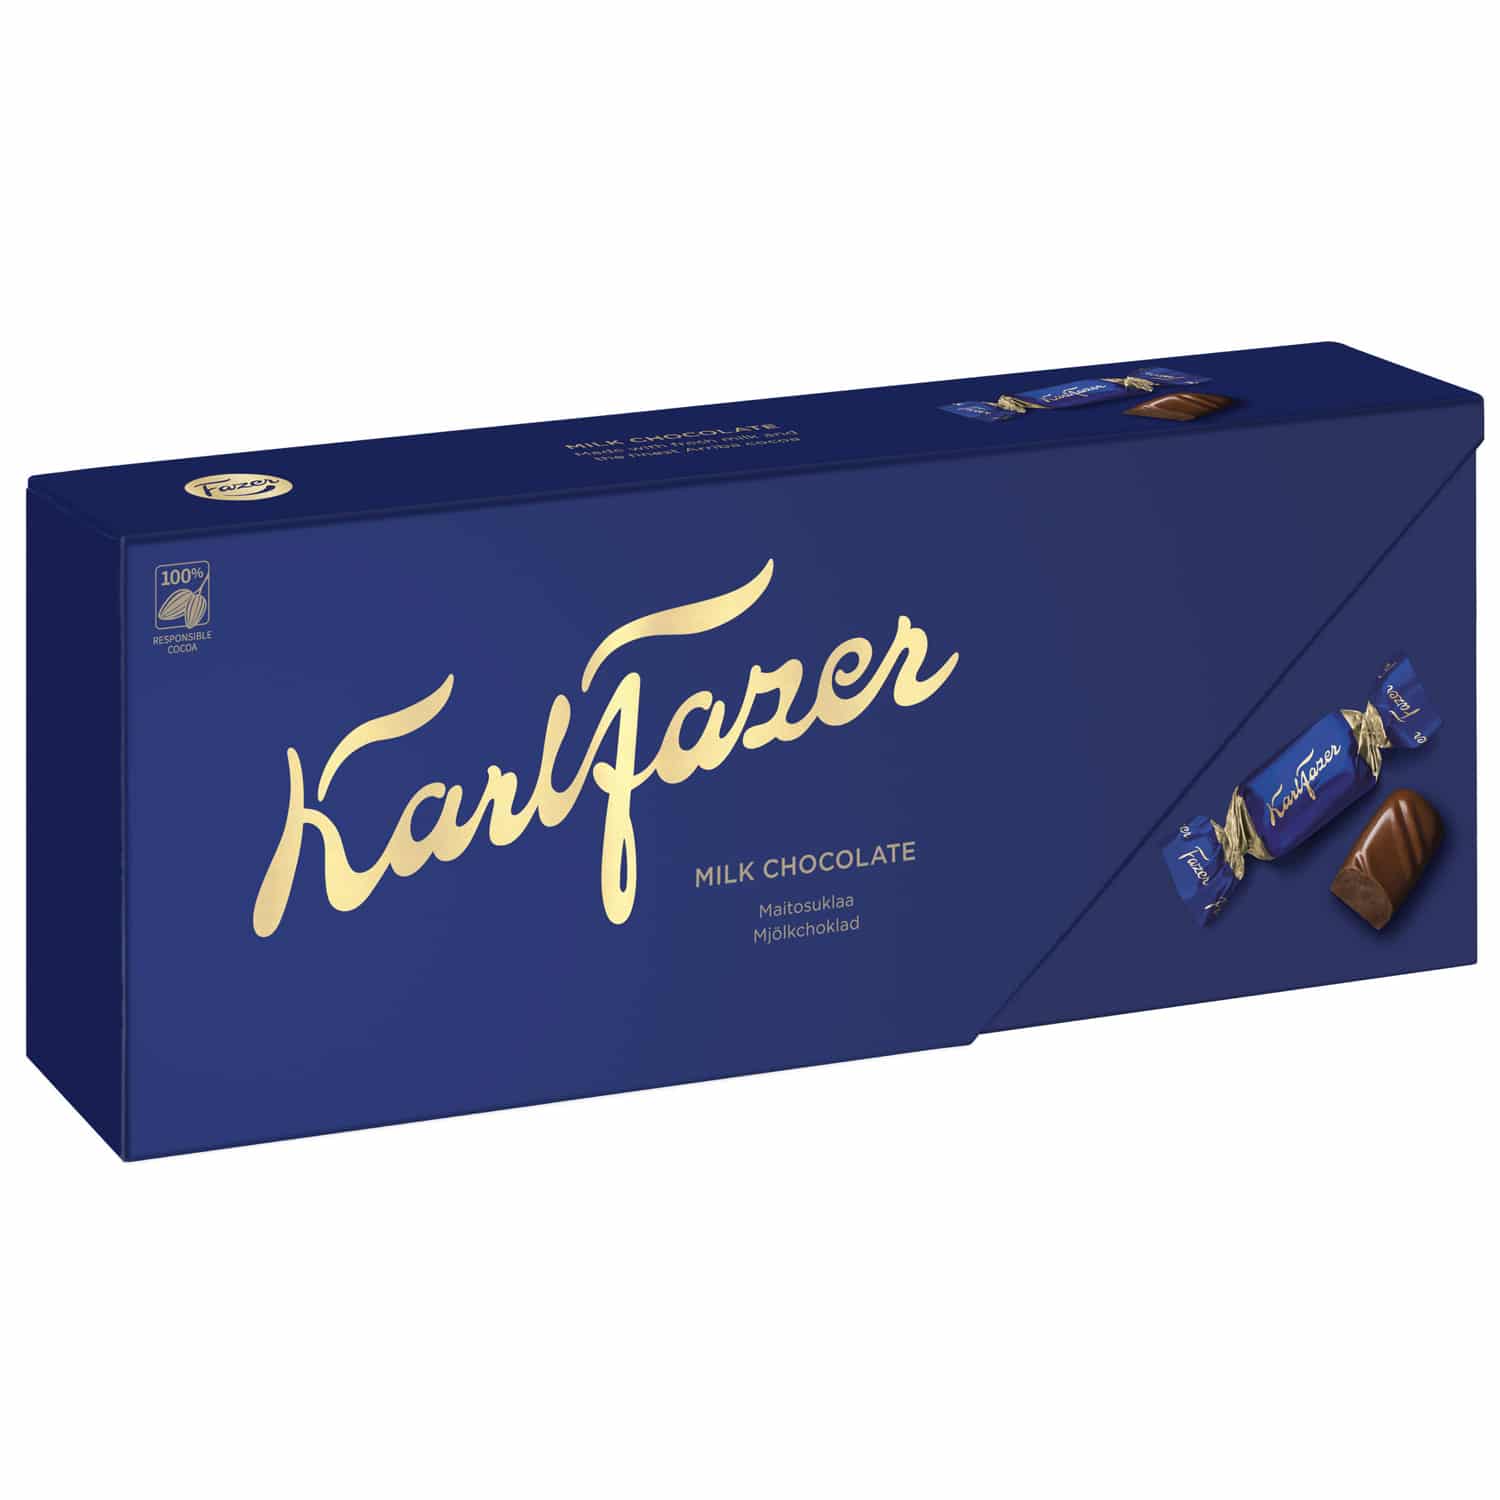 pralinen milchschokolade Karl_Fazer_Milk_chocolate_270g schokopralinen schokolade schoko schoki schokobonbon finnland